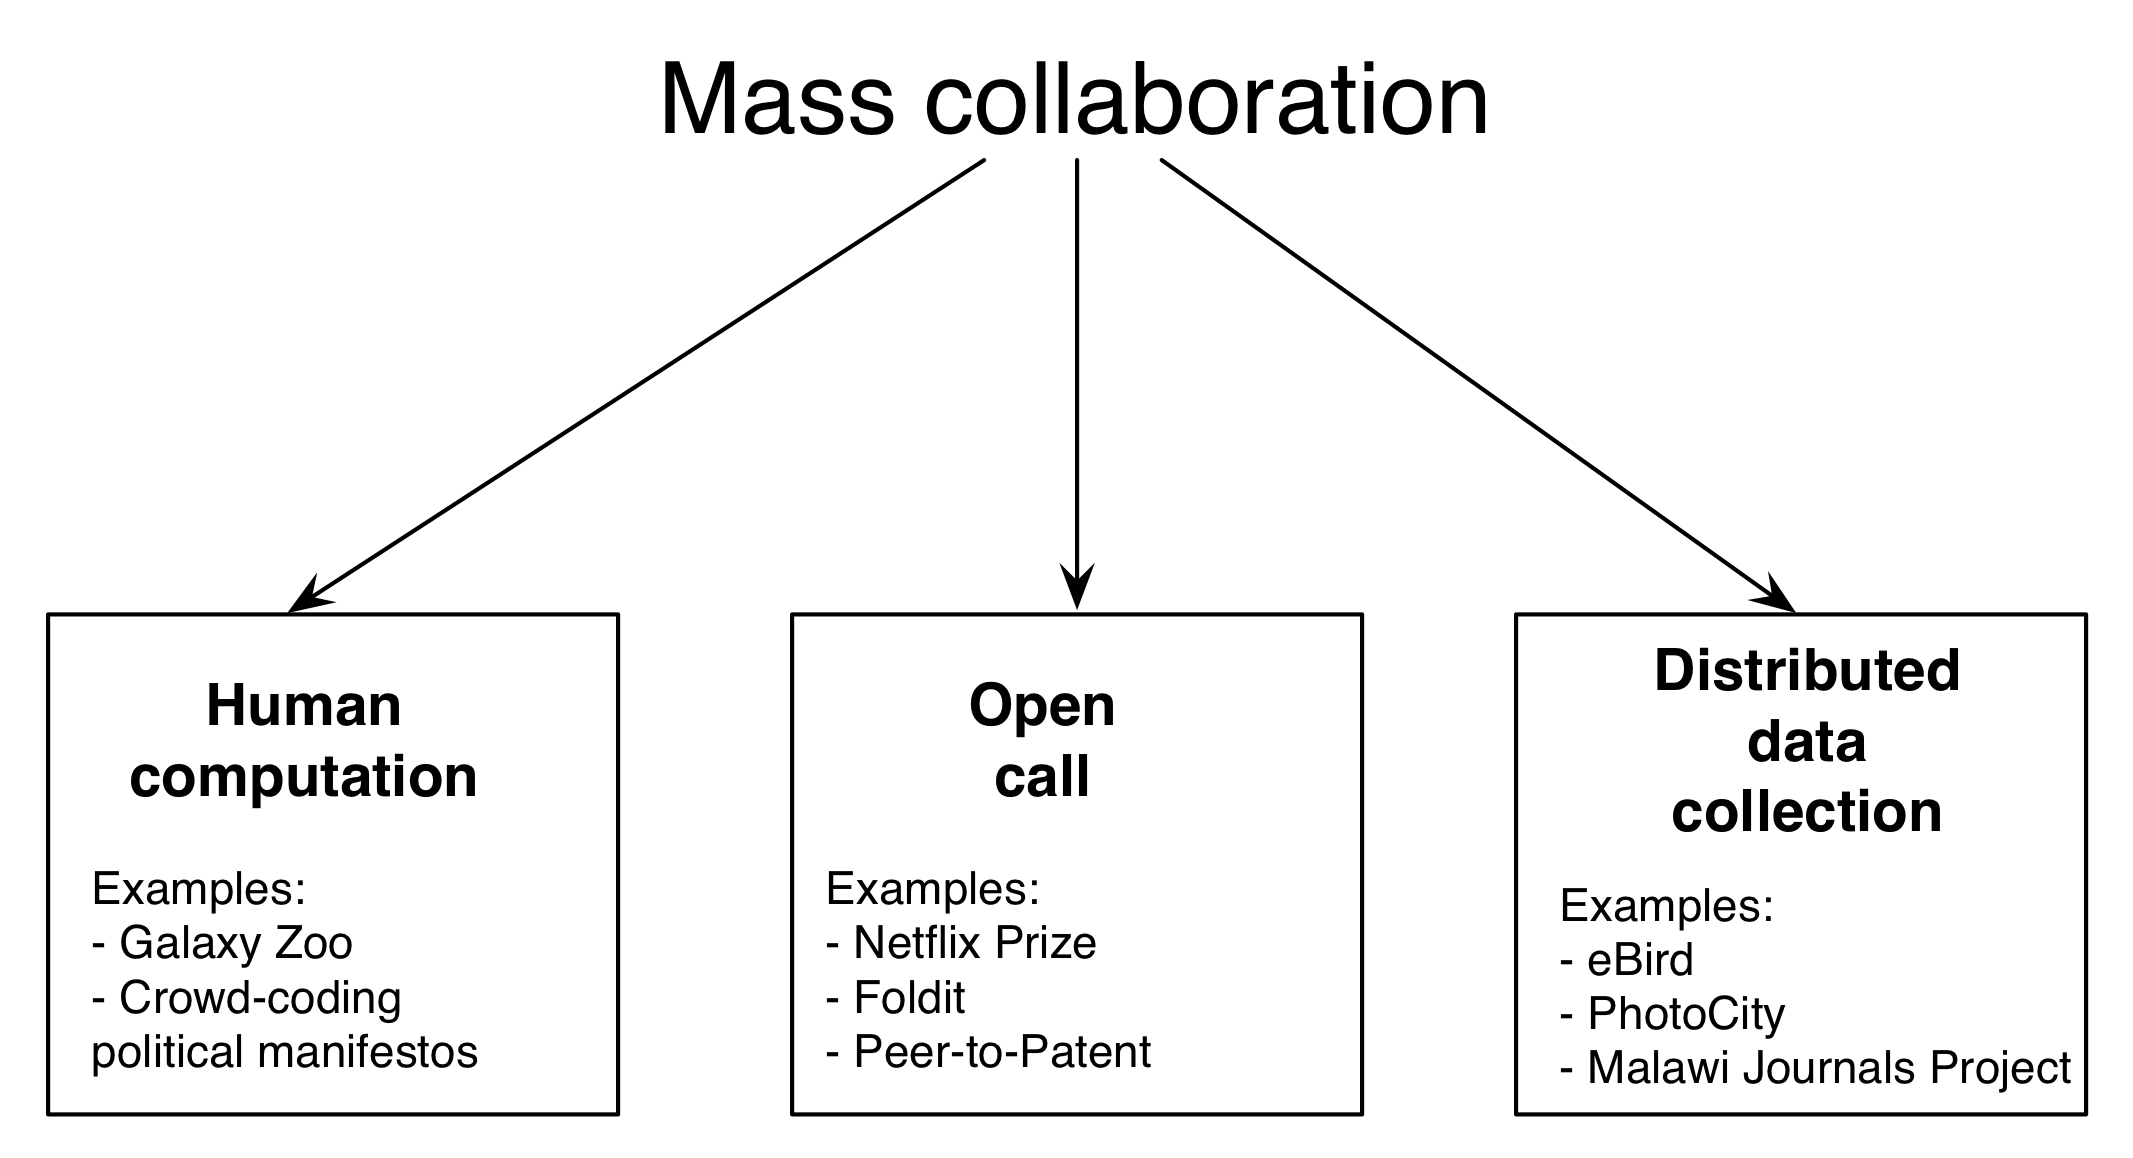 Slika 5.1: Shema masovnega sodelovanja. To poglavje je organizirano v okviru treh glavnih oblik množičnega sodelovanja: človeškega izračuna, odprtega klica in porazdeljenega zbiranja podatkov. Na splošno, množično sodelovanje združuje ideje s področij, kot so znanost državljanov, množičenje in kolektivne inteligence.